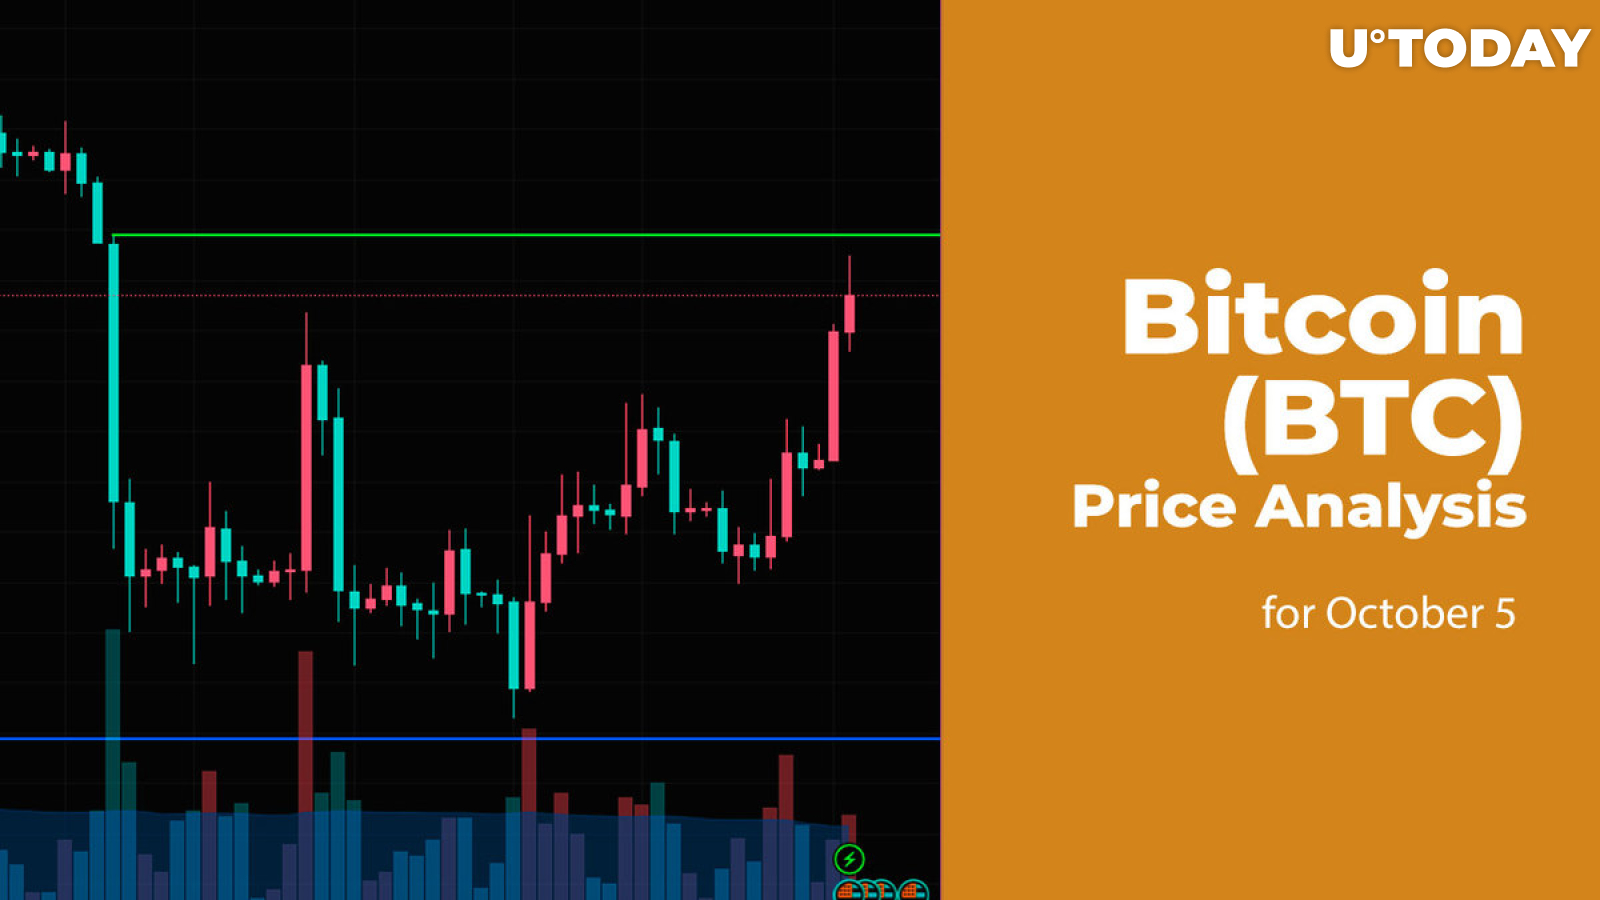 Bitcoin (BTC) Price Analysis for October 5